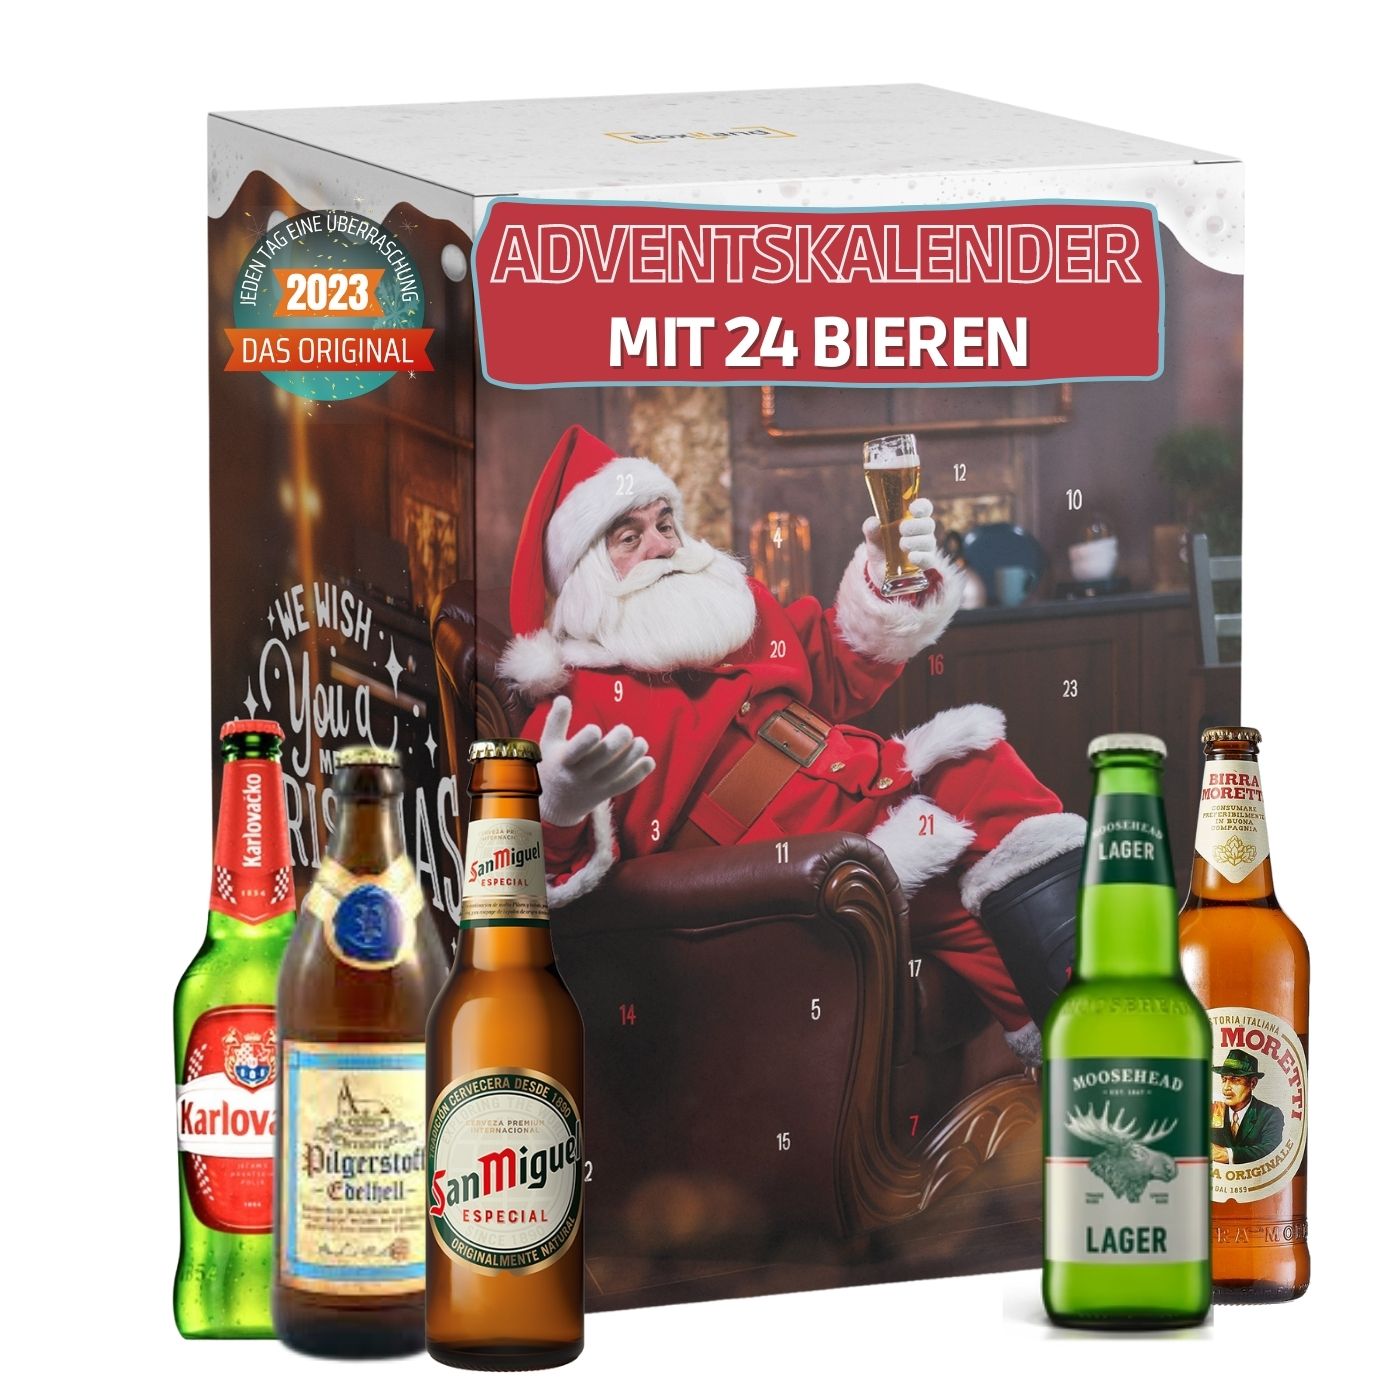 Adventskalender mit 24 Bieren aus aller Welt (24 x 0,33 l) I Adventsgeschenk für Bierliebhaber I besondere Bier Geschenkidee für Männer I Adventskalender 2023